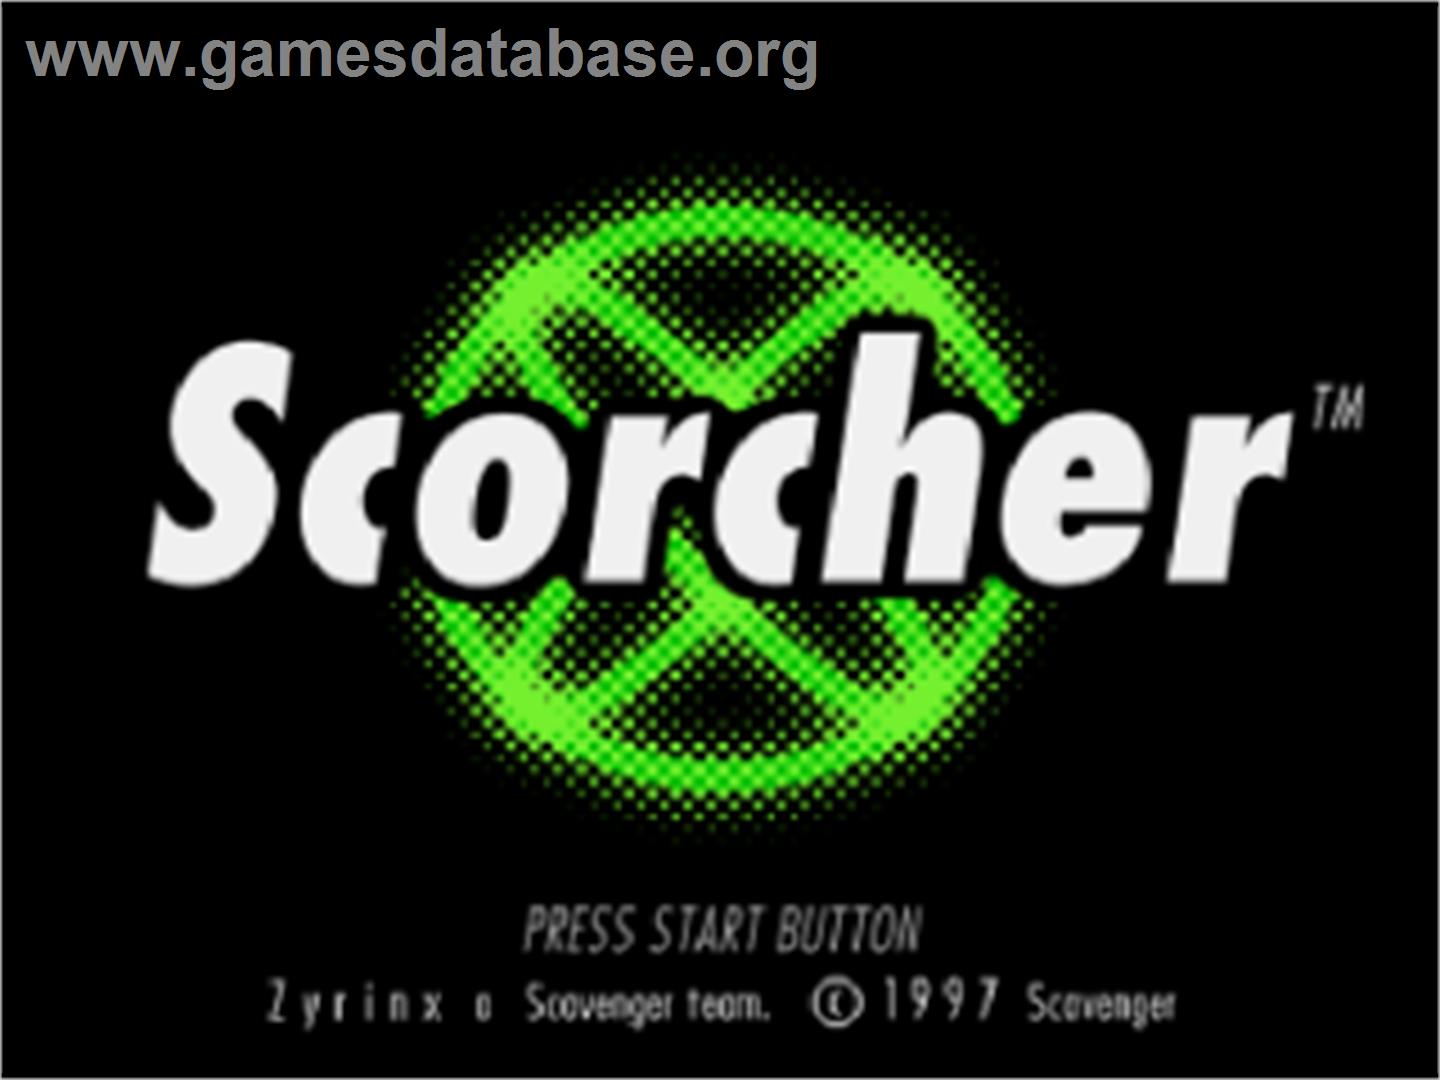 Scorcher - Sega Saturn - Artwork - Title Screen